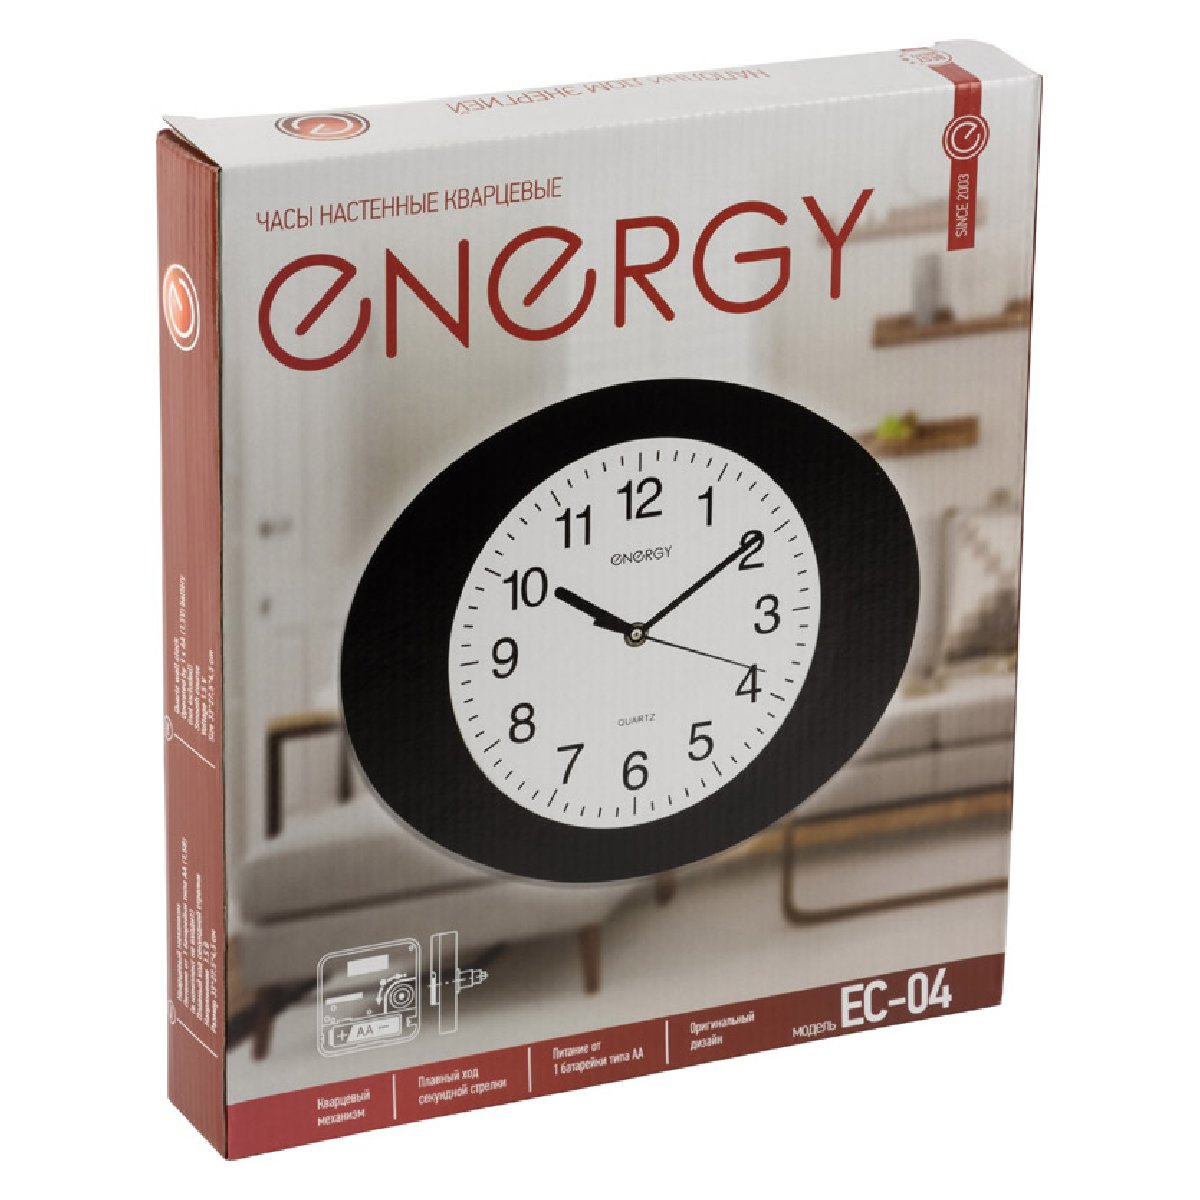 Часы настенные кварцевые Energy EC-04 овальные (33x4.5 см) белый циферблат (009304)